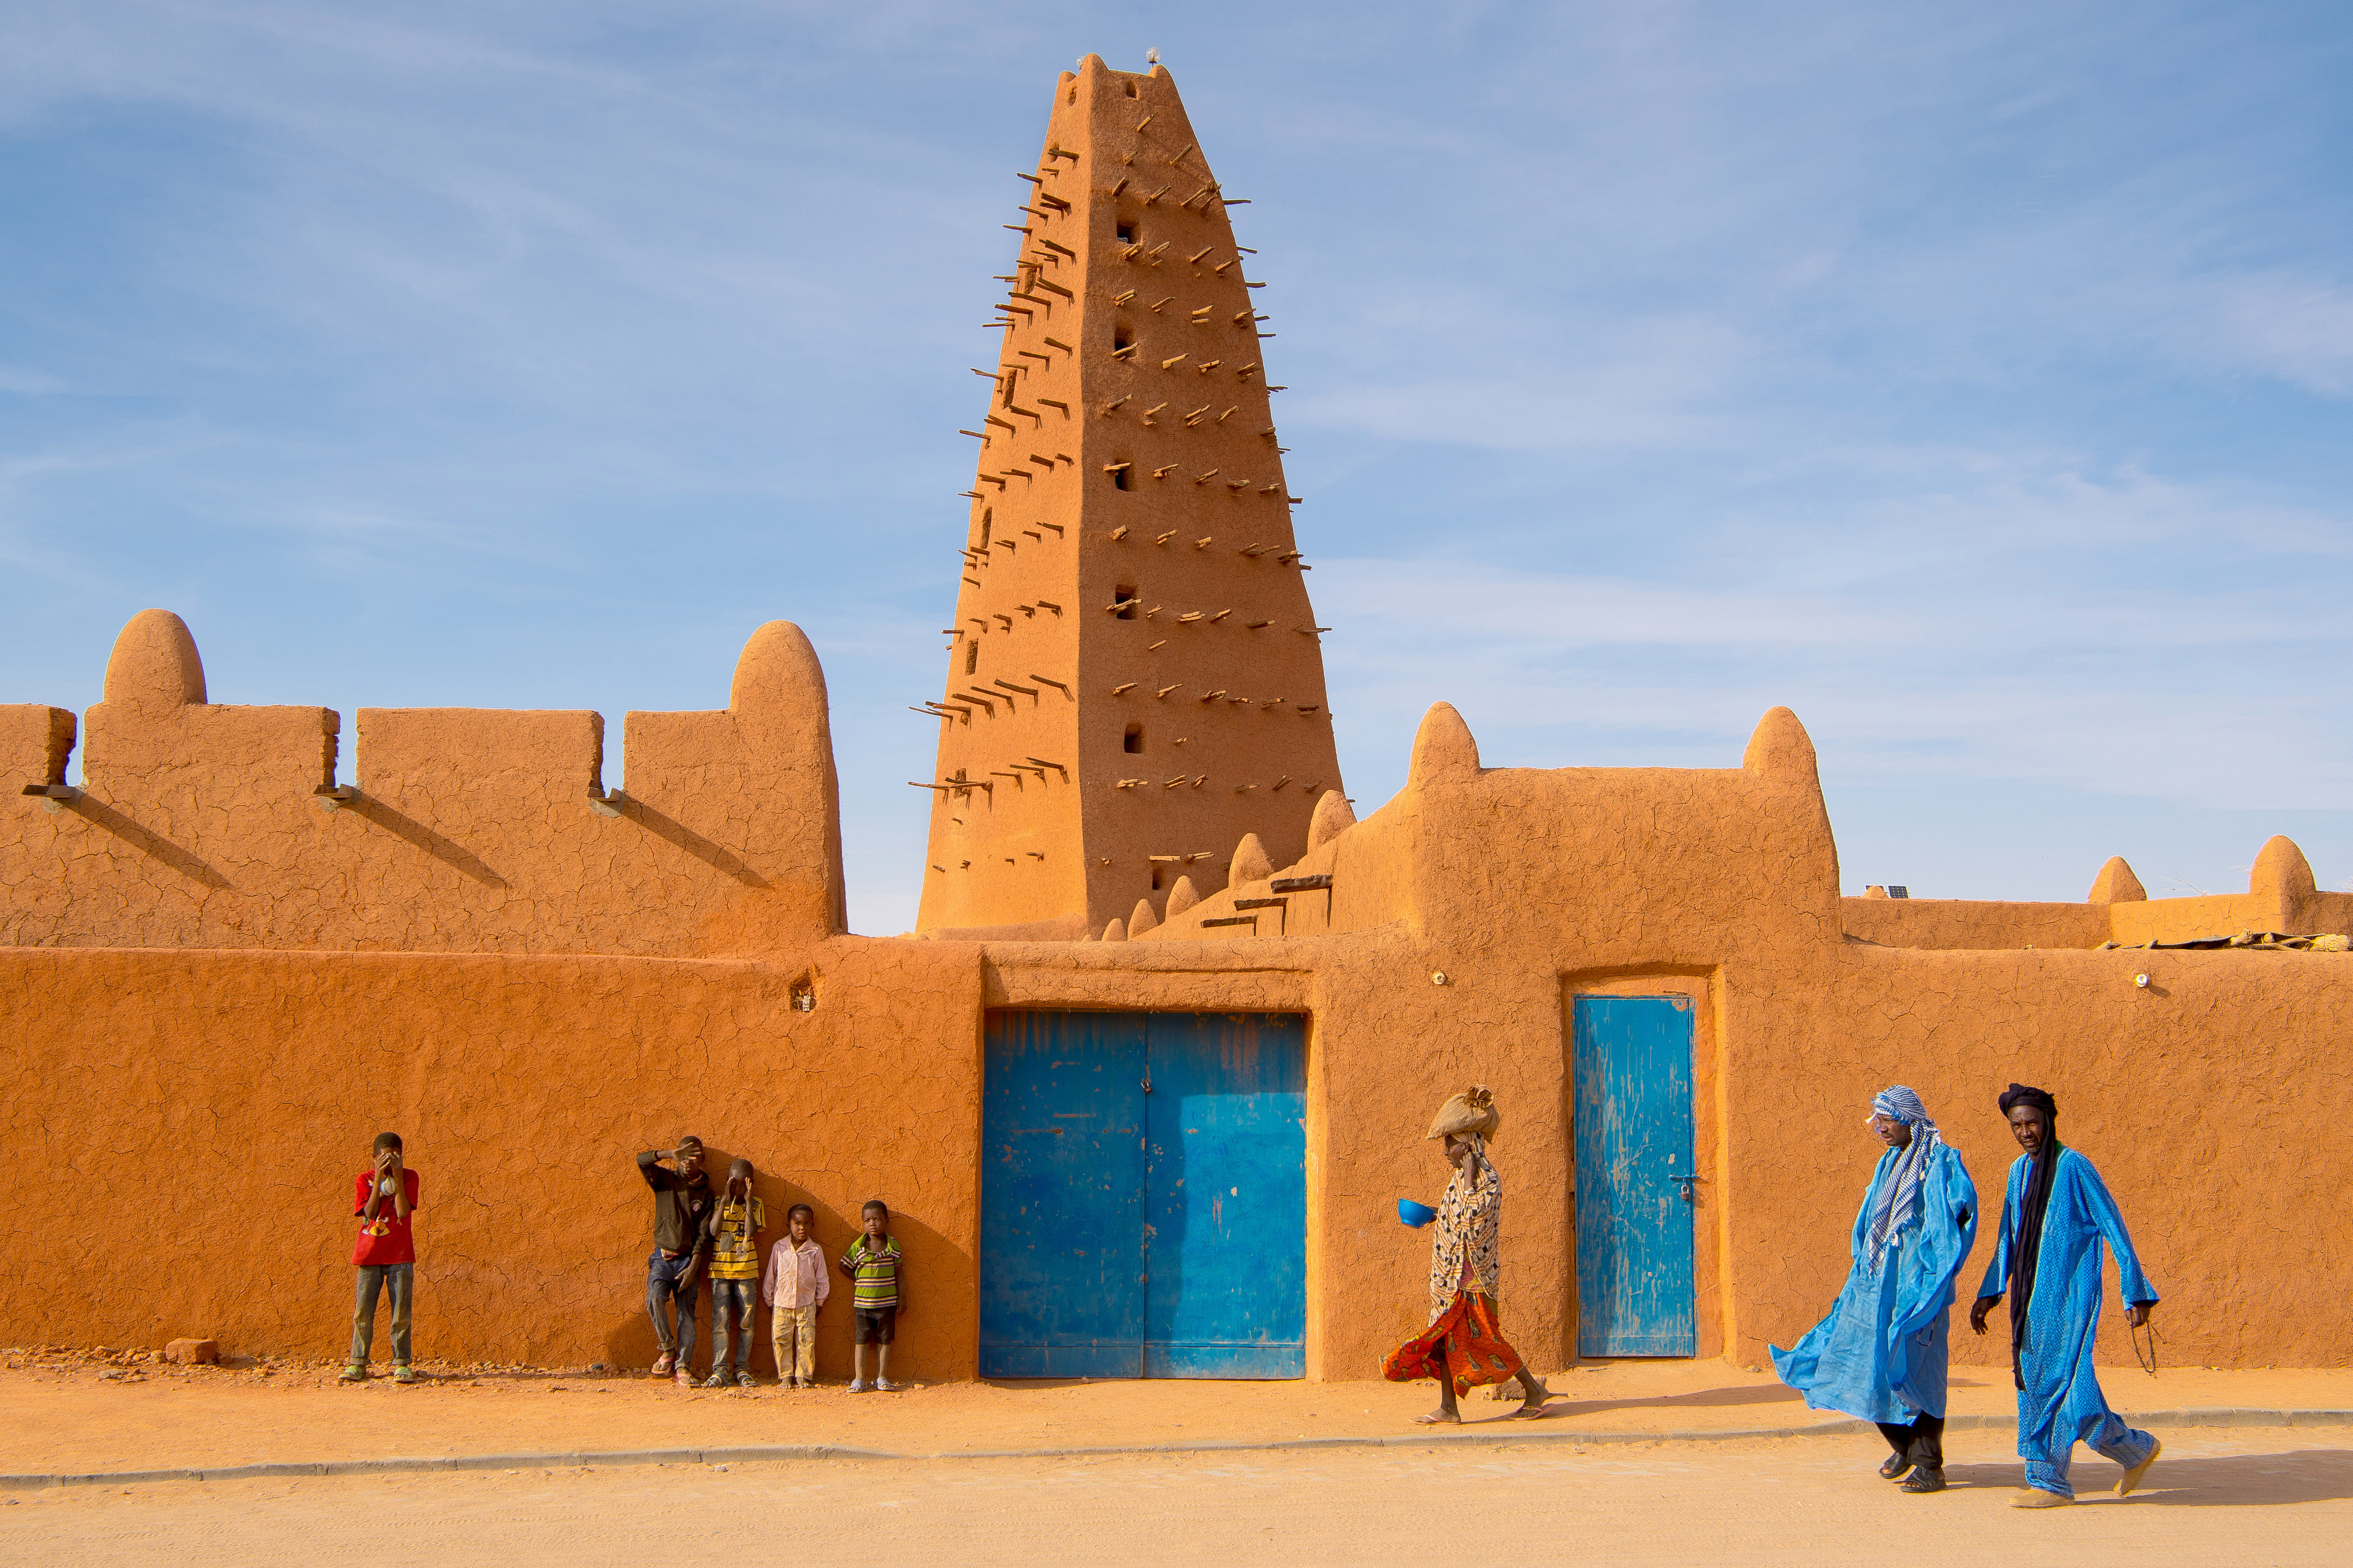 阿加德兹苏丹宫殿尼日尔是世界上最炎热的国家之一,年平均气温30℃